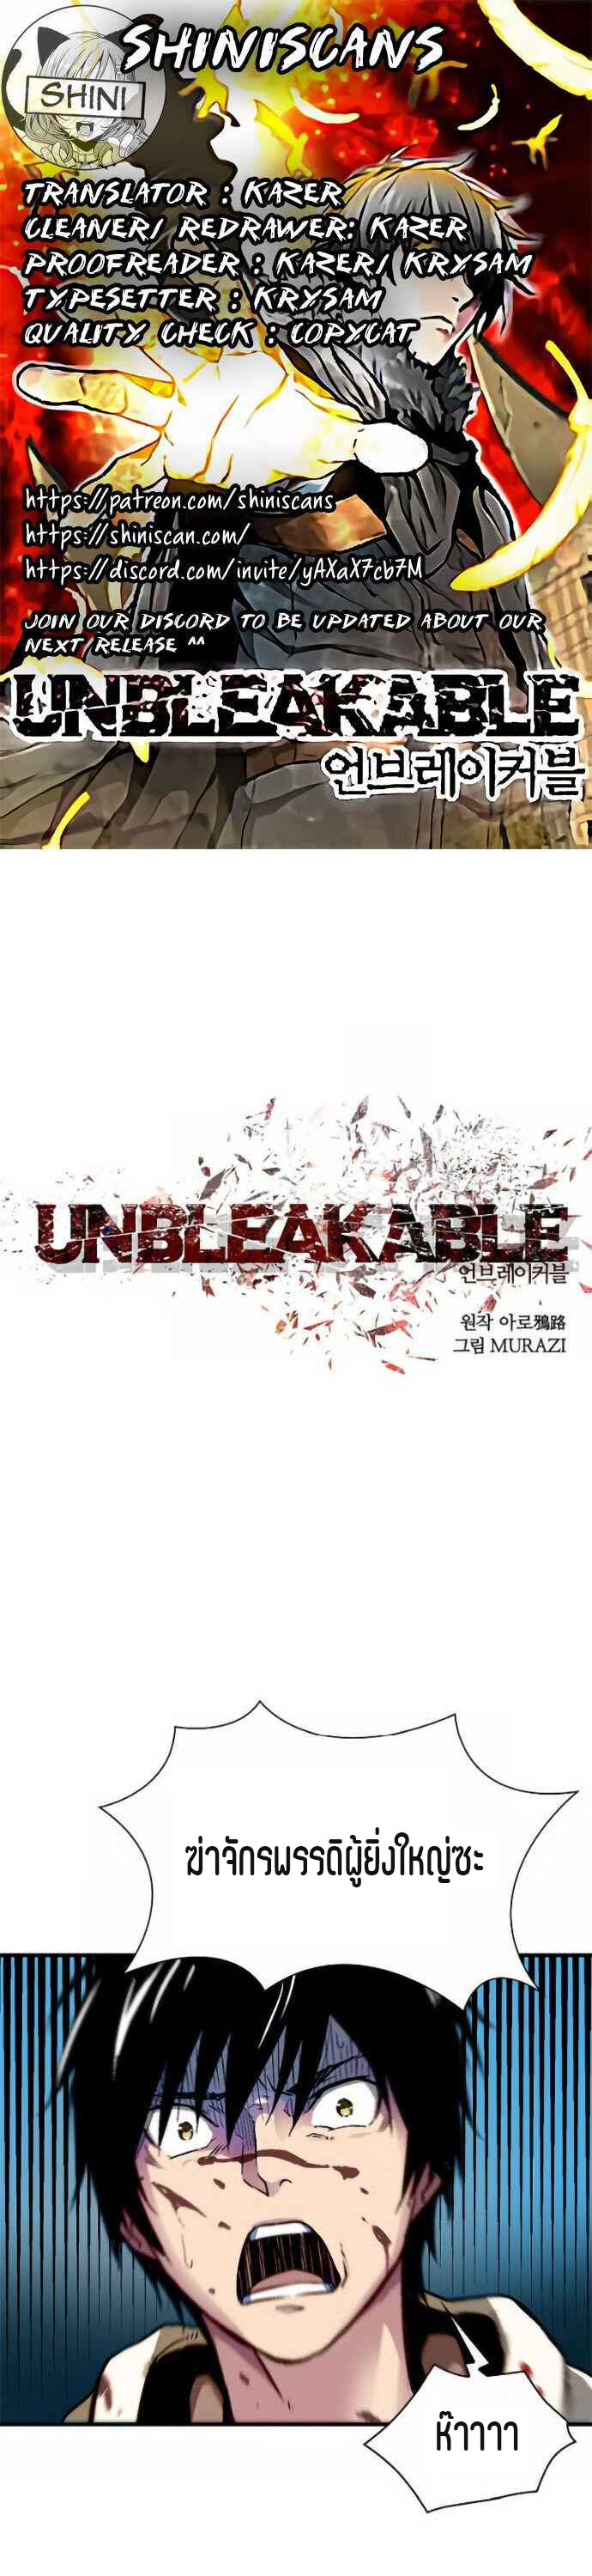 Unbreakable2 (1)